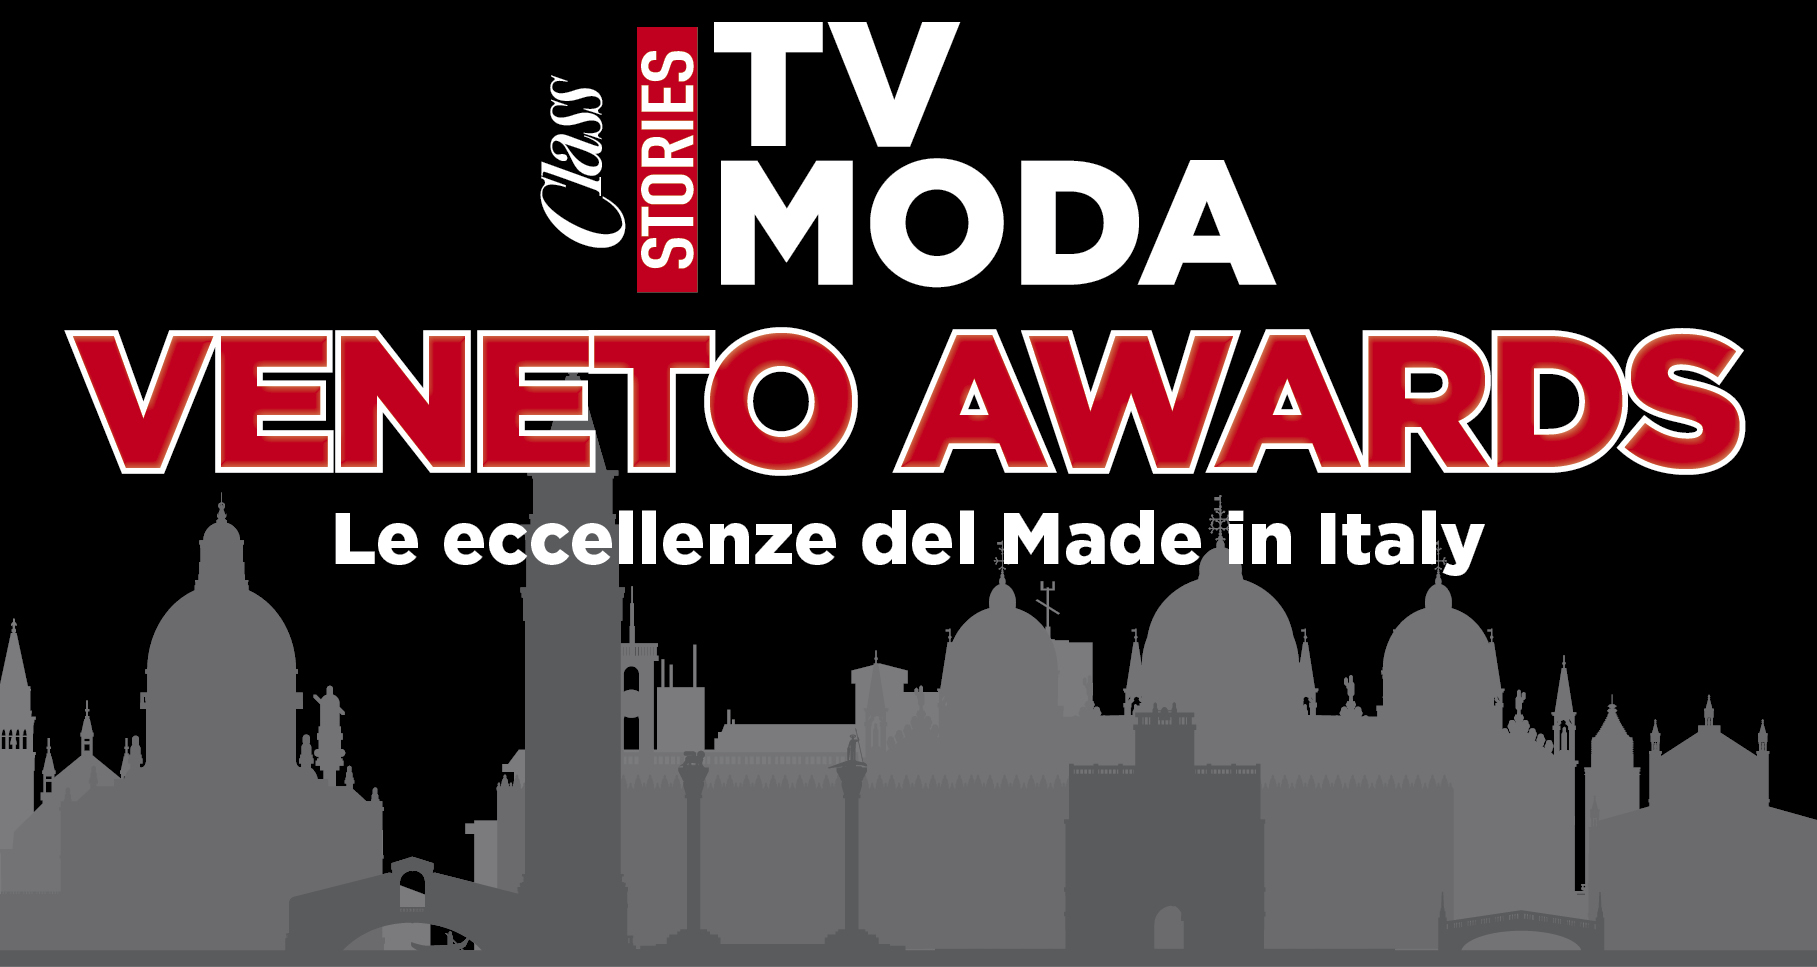 Class TV Moda Veneto Awards